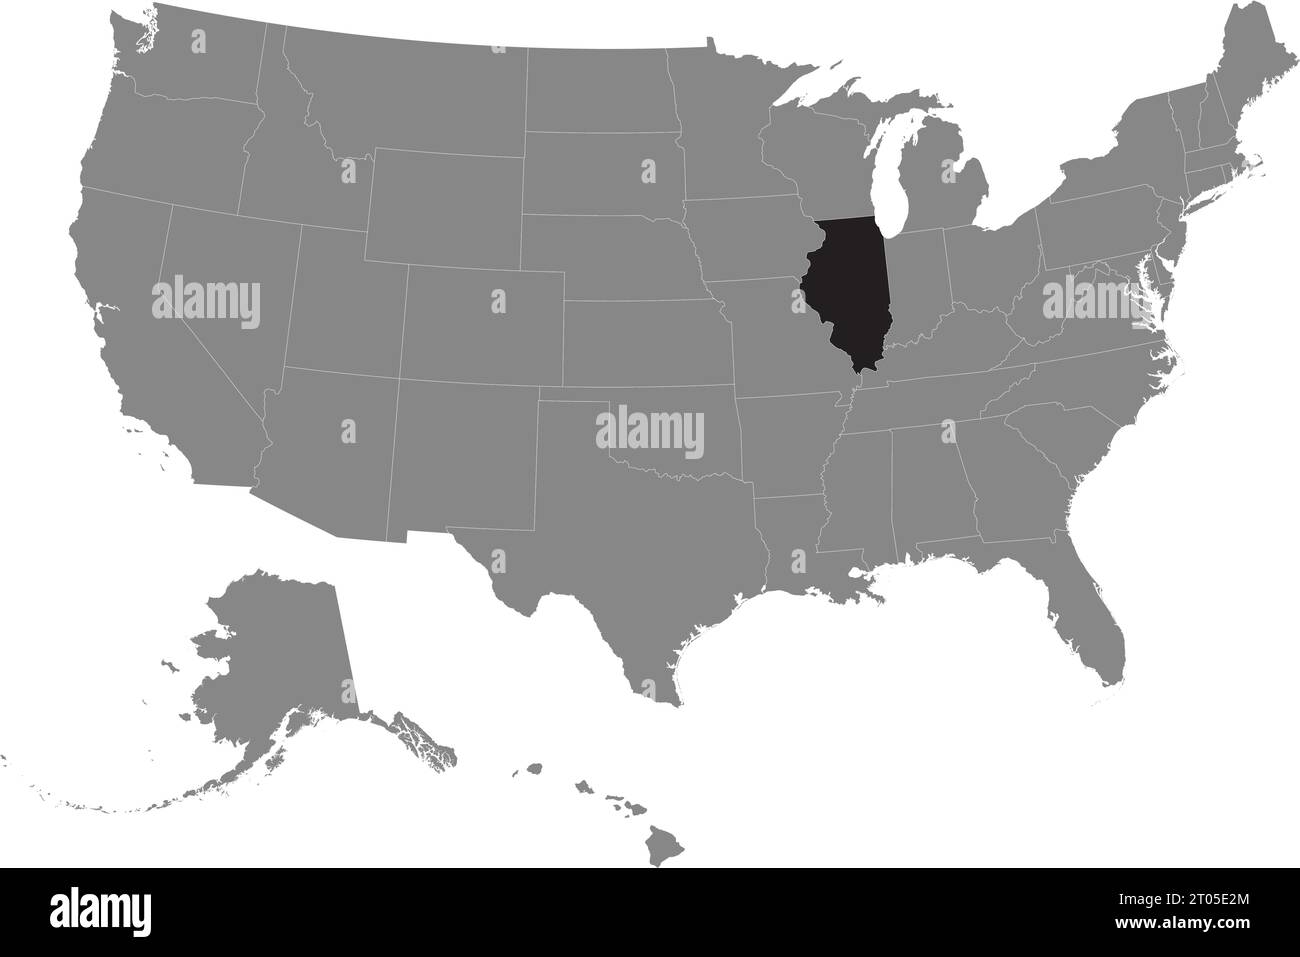 Schwarze CMYK-Bundeskarte von ILLINOIS in detaillierter grauer, leerer politischer Karte der Vereinigten Staaten von Amerika auf transparentem Hintergrund Stock Vektor